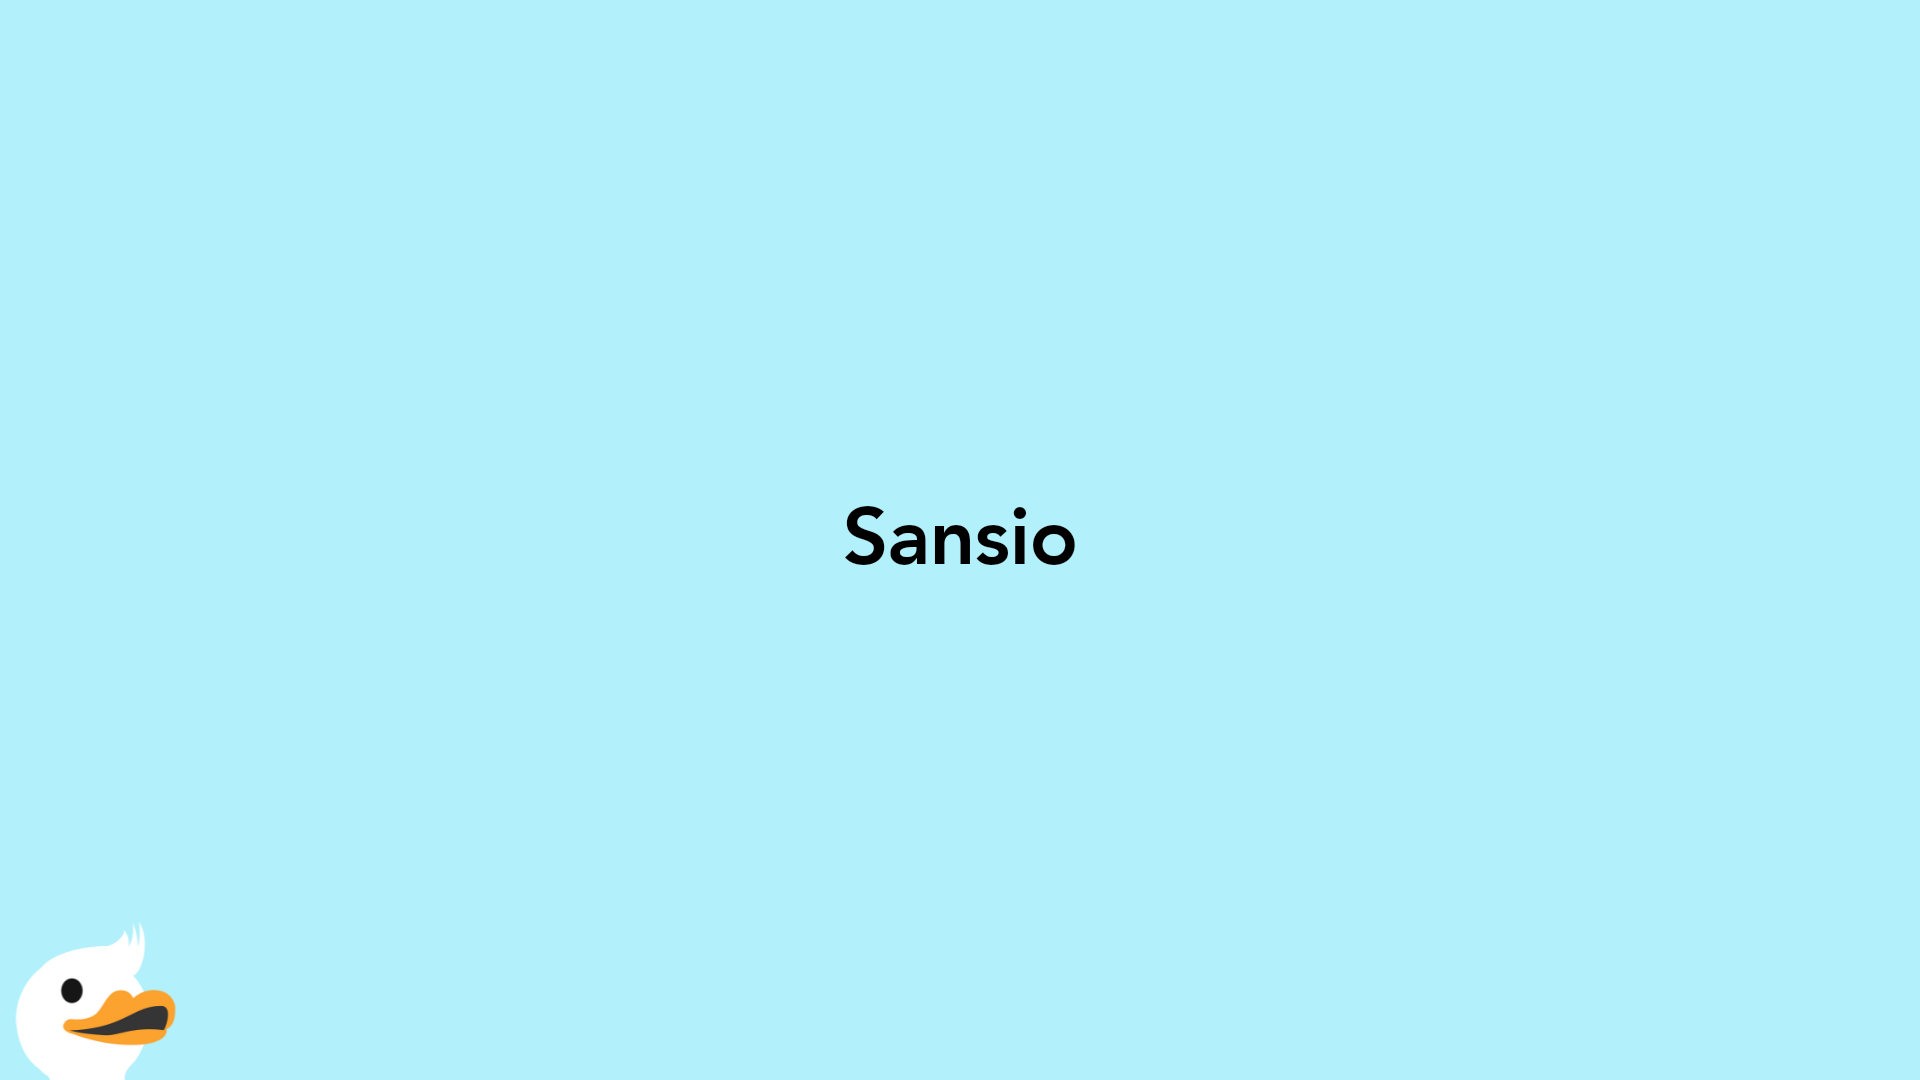 Sansio